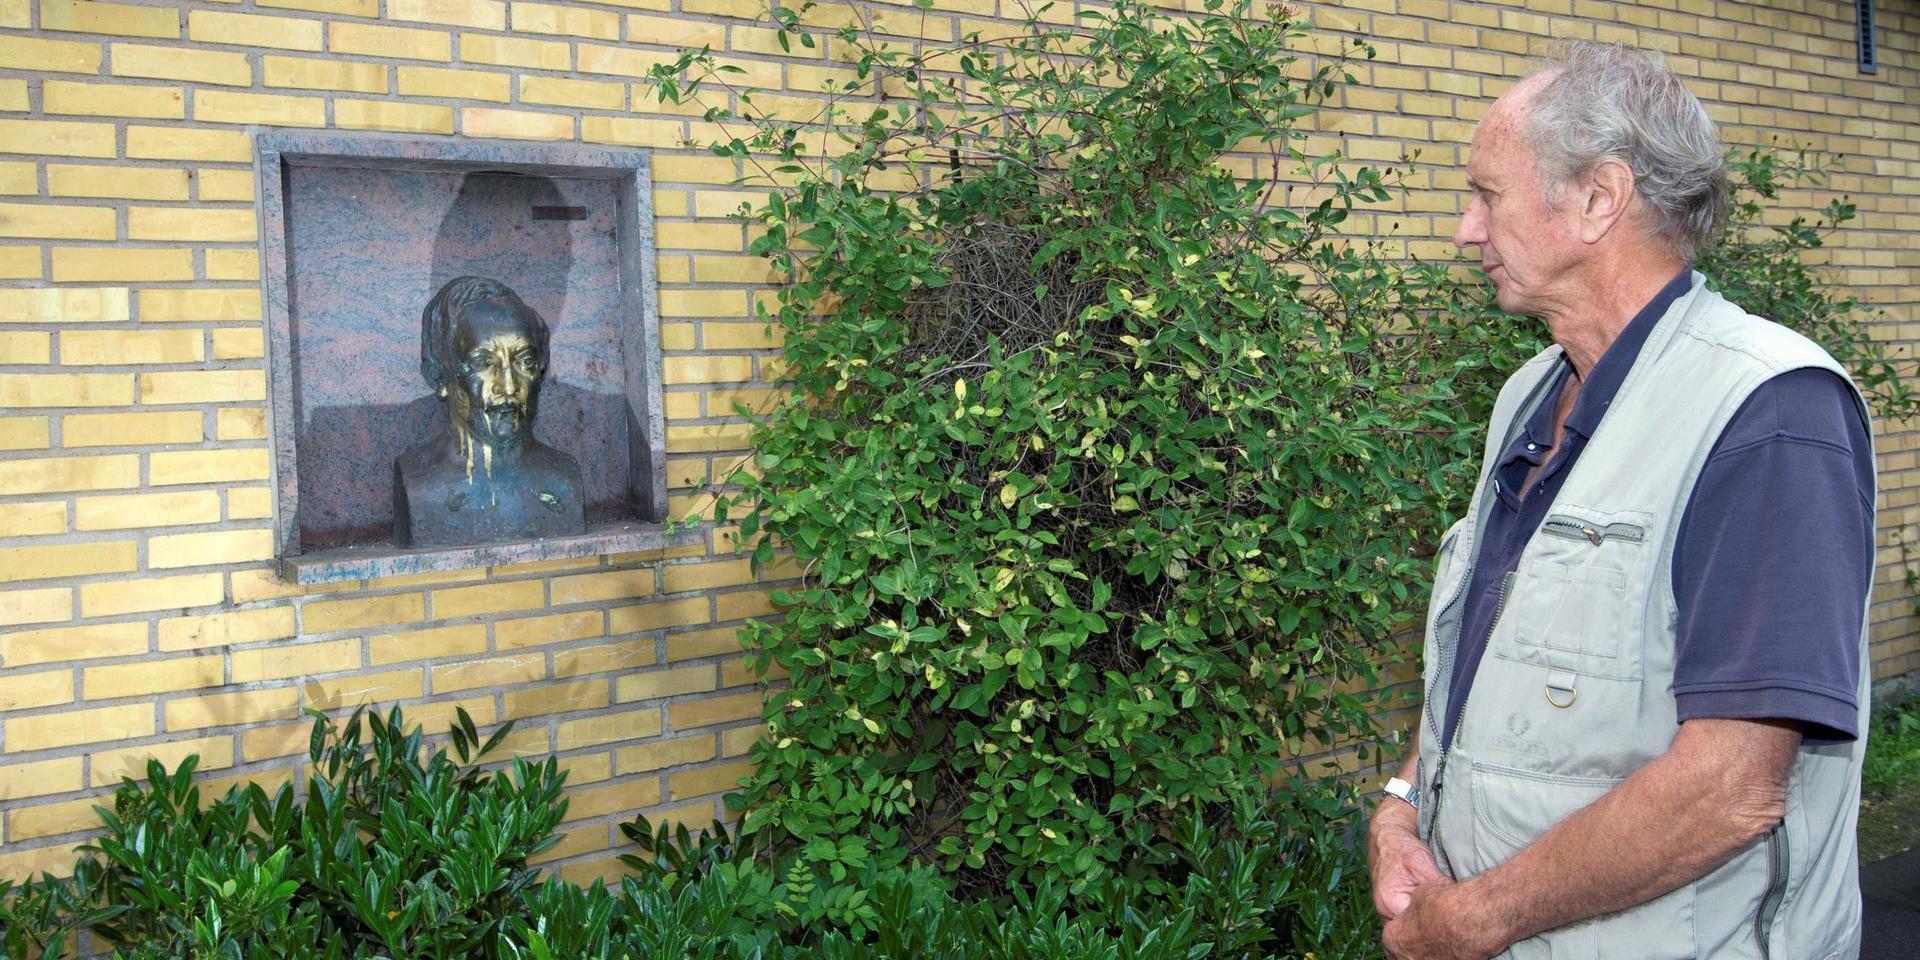 Statyetten av Fredrik Ström, författare och politiker, har blivit vandaliserad. Barnbarnet Kåre Ström reagerar. 